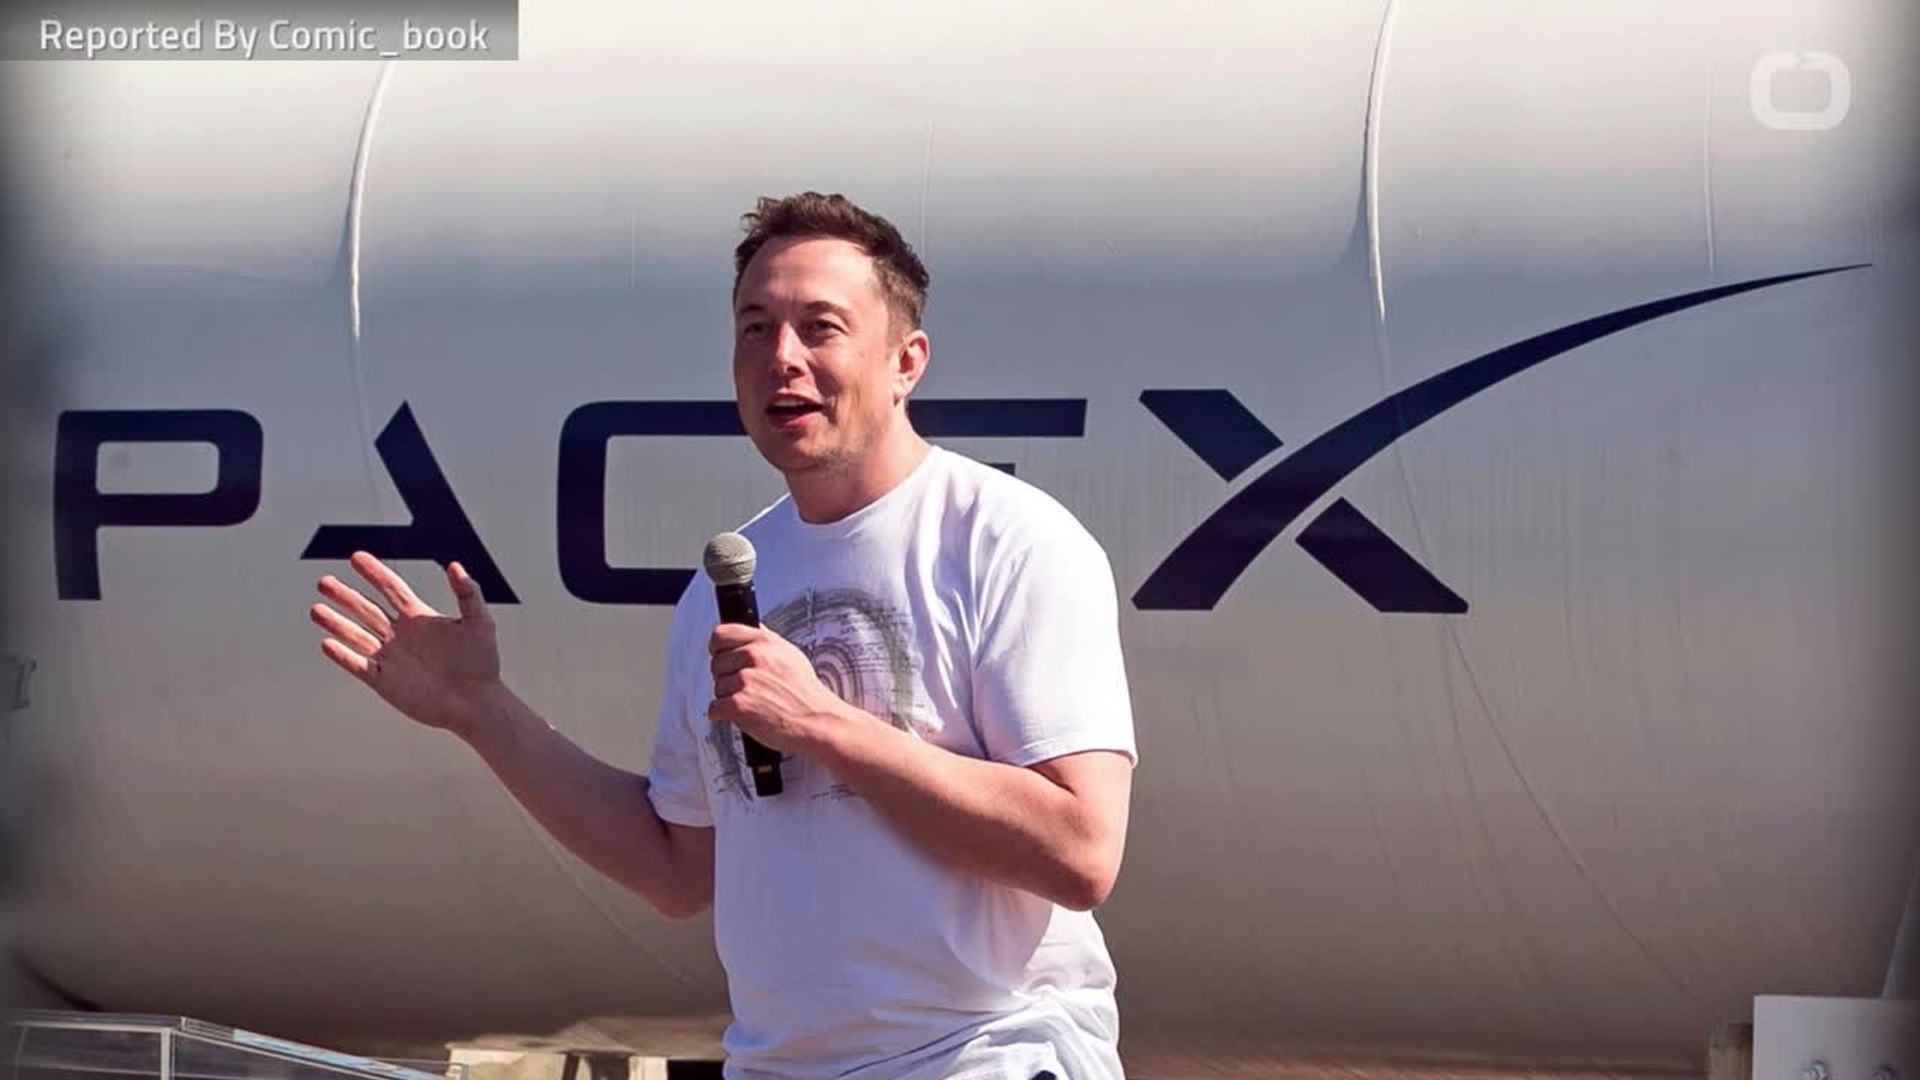 Dr. Strange Director Calls Out Elon Musk